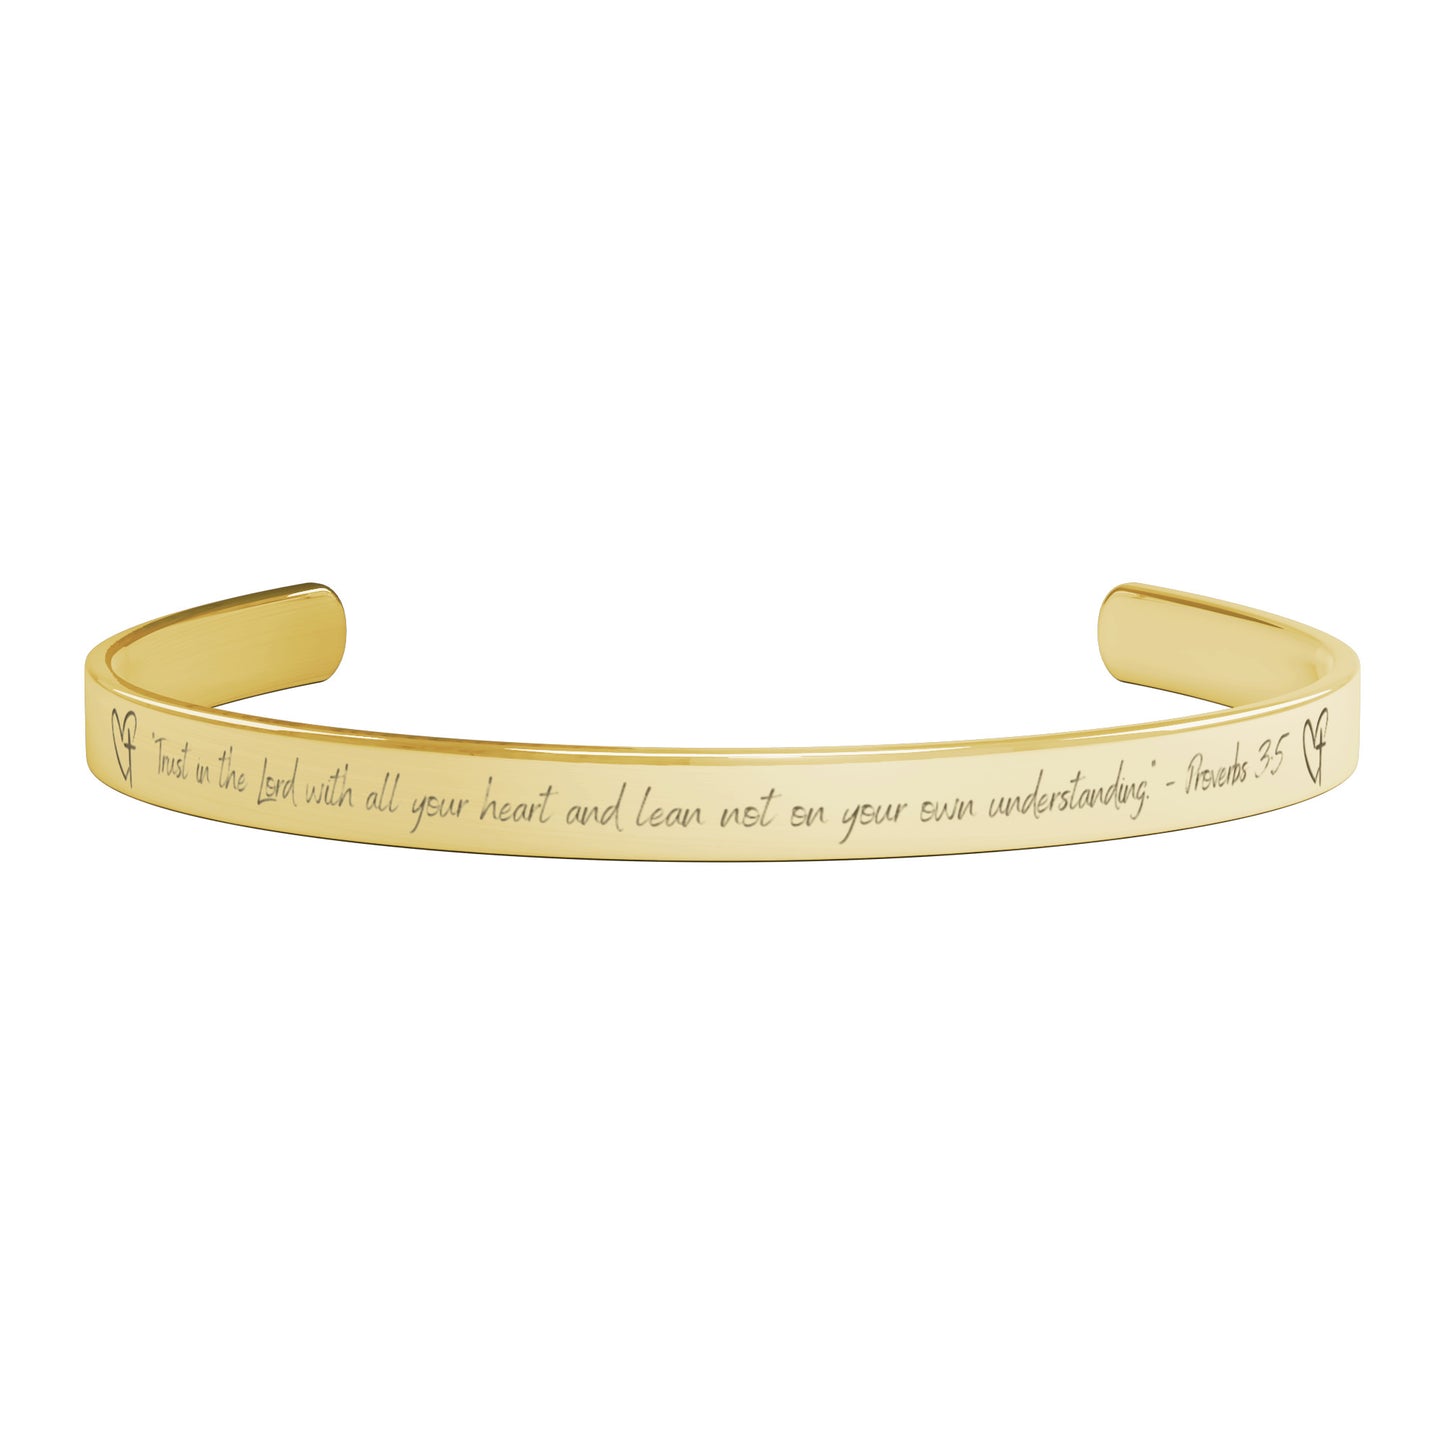 Trust in the Lord - cuff bracelet